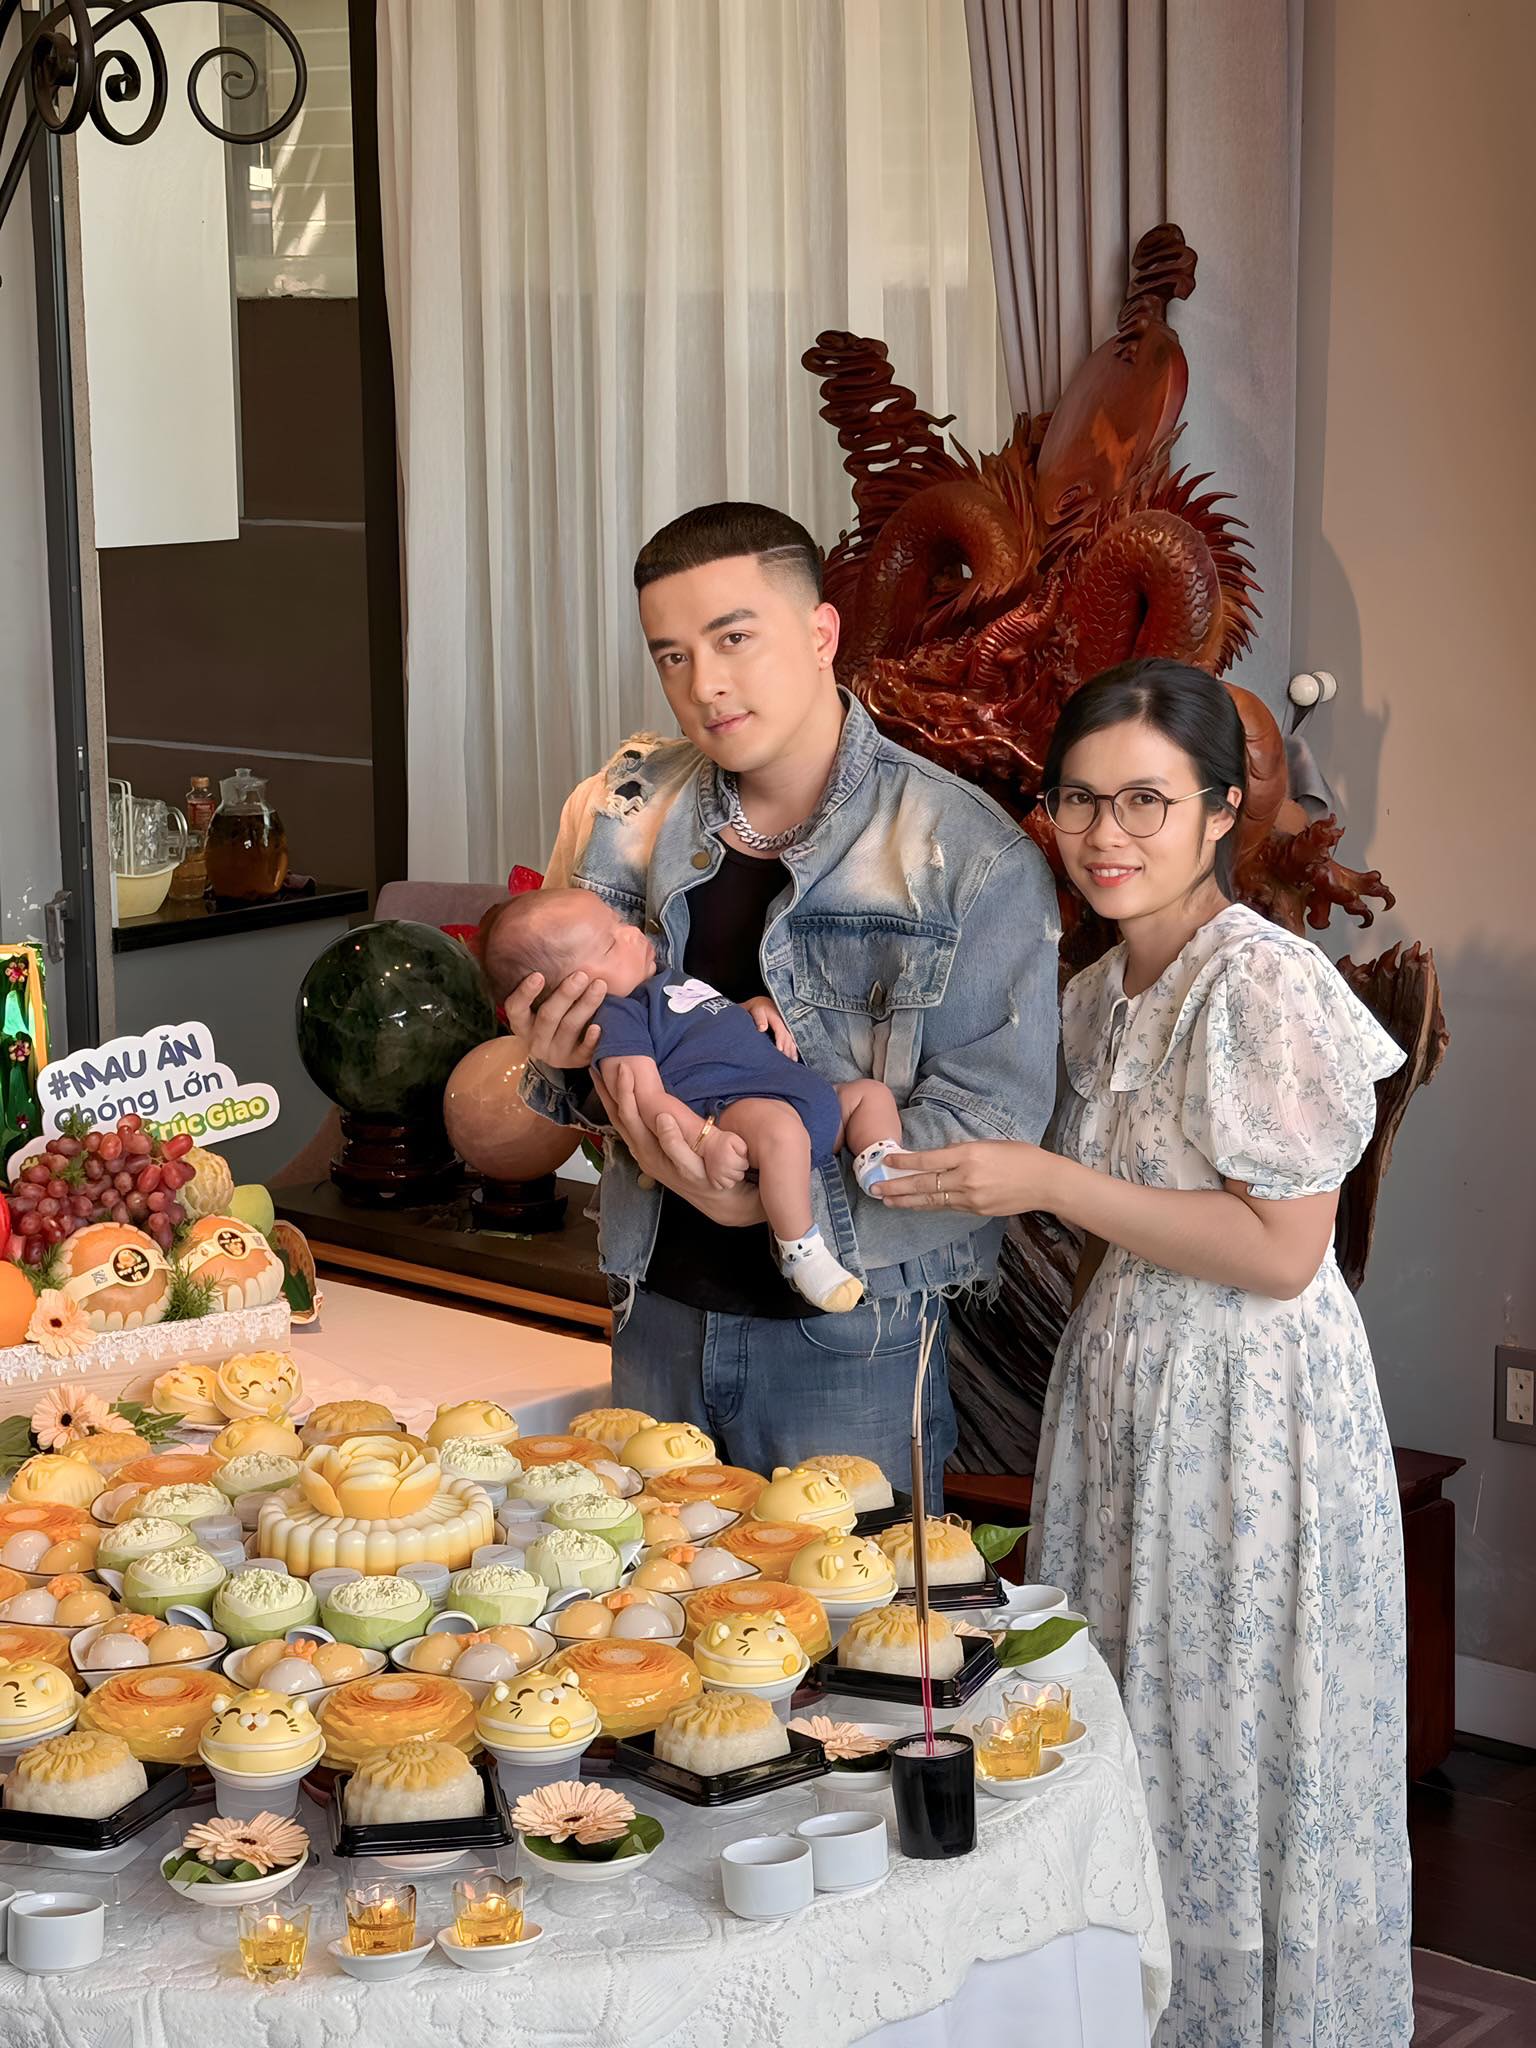 Gặp mẹ bỉm chuyên làm tiệc đầy tháng cho em bé nhà sao Việt: "Dù là người nổi tiếng hay không mình đều áp lực"- Ảnh 1.